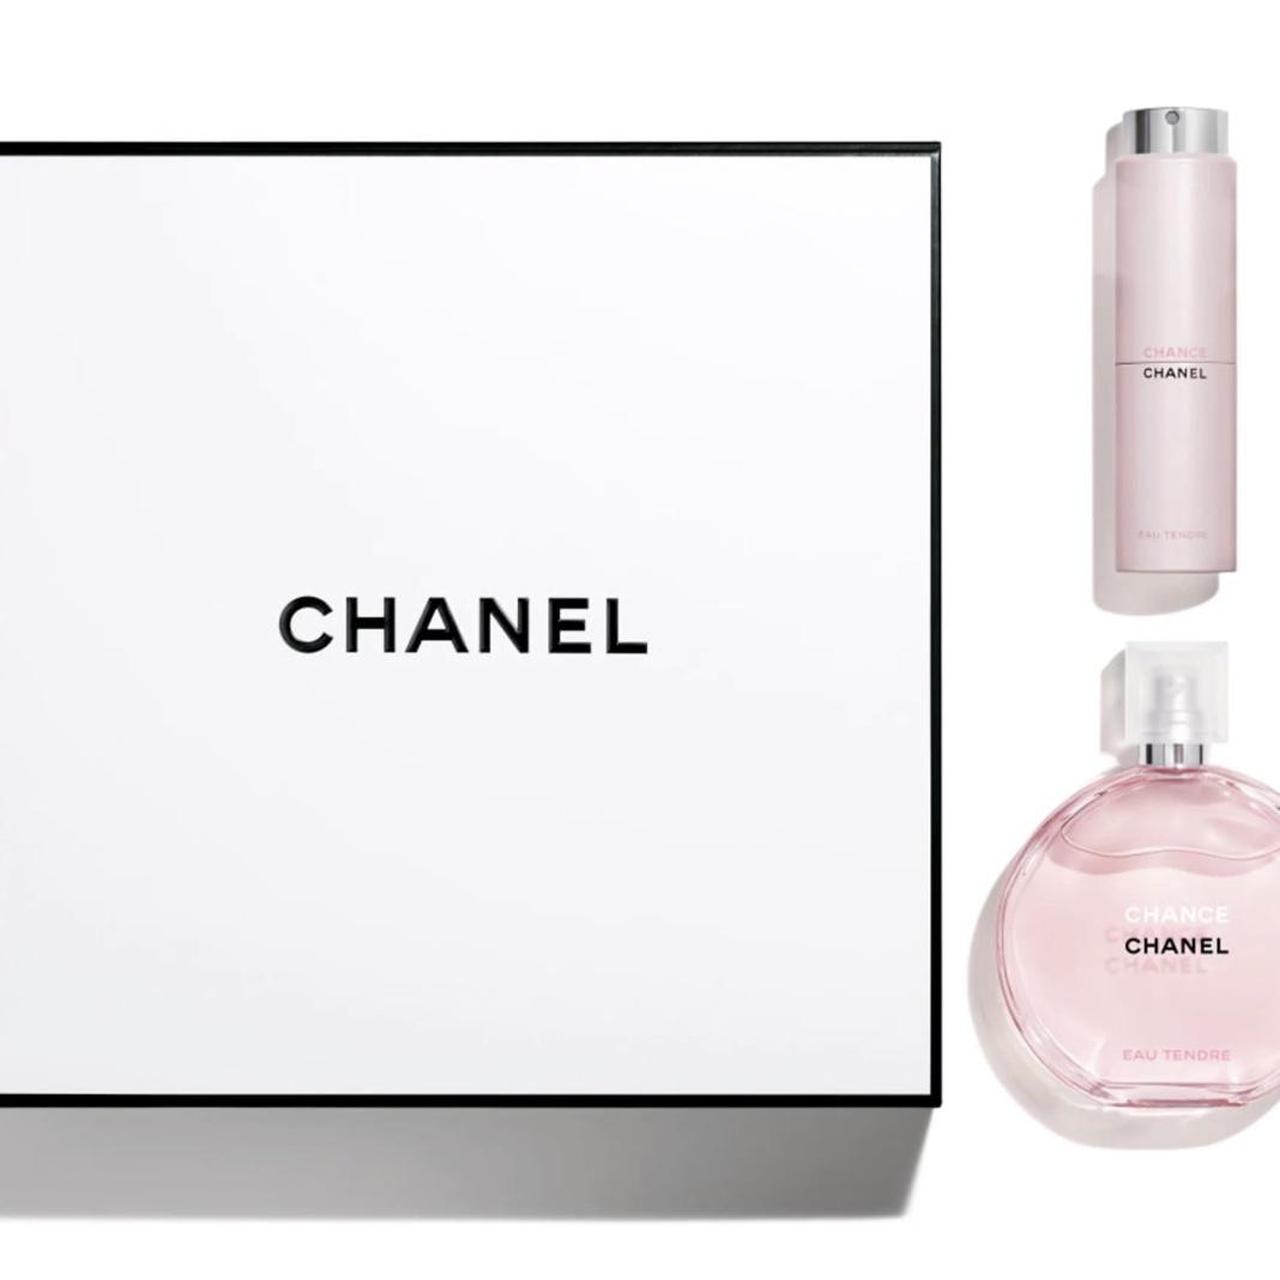 Chanel CHANCE EAU TENDRE Eau de Toilette Perfume set... - Depop